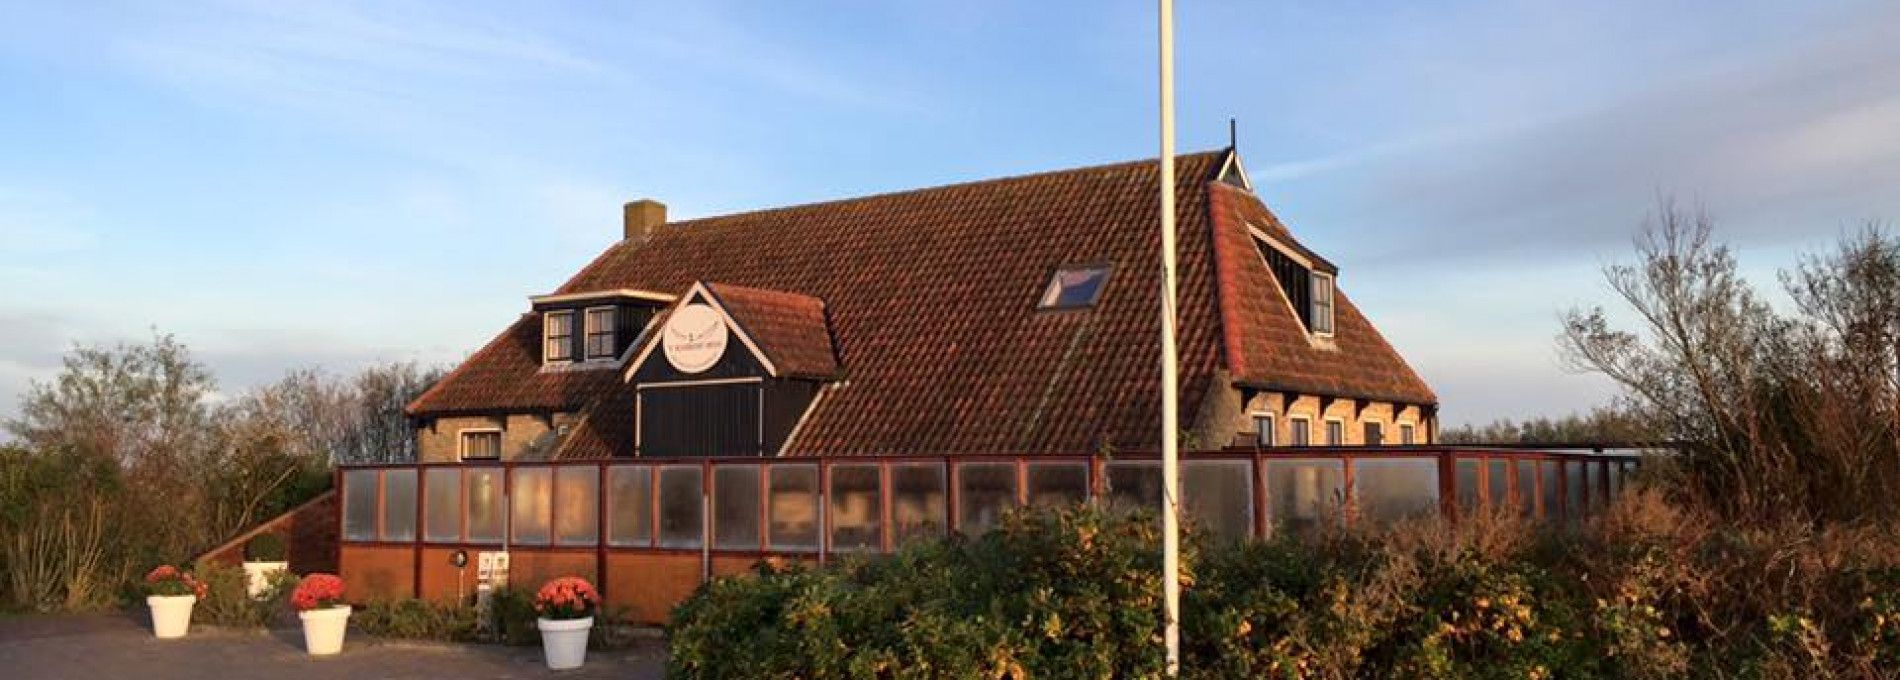 Restaurant 't Koaikershuus - VVV Ameland